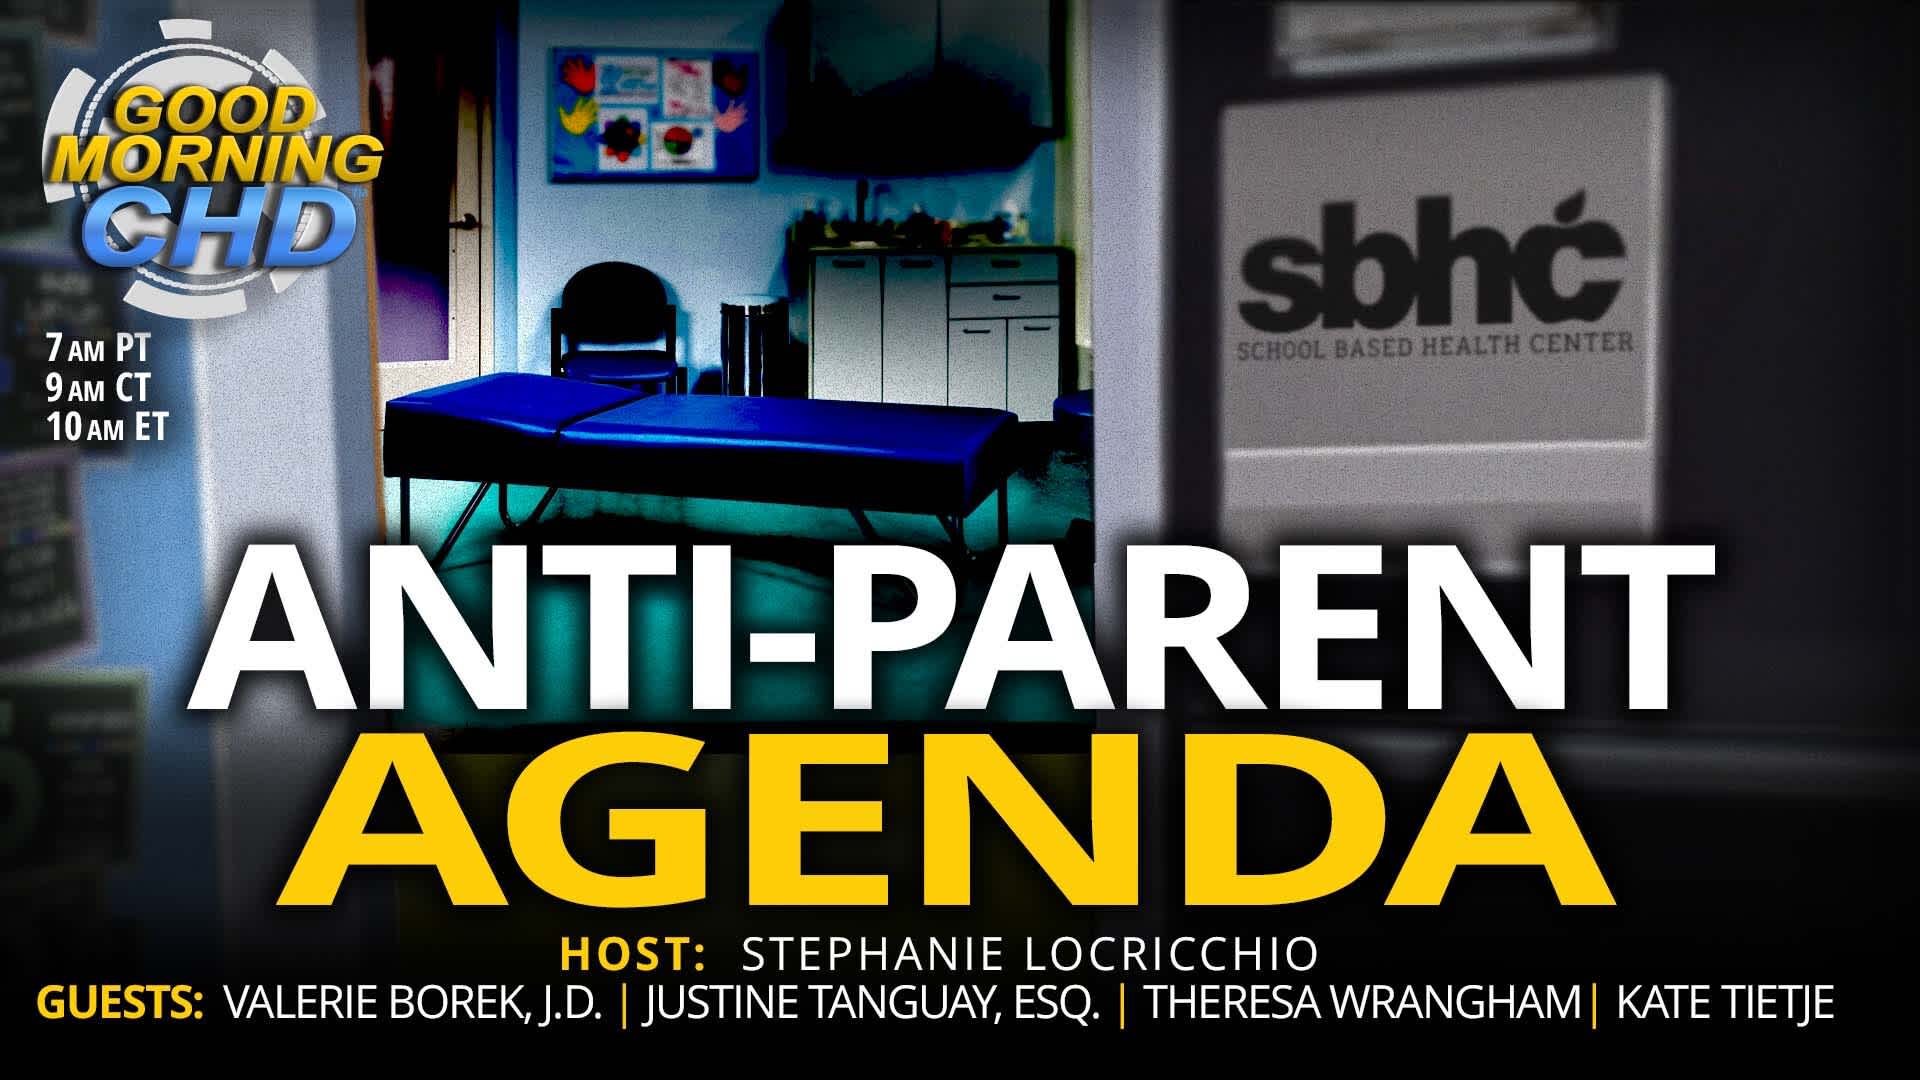 ‘Predatory’ Anti-Parent Agenda in Schools